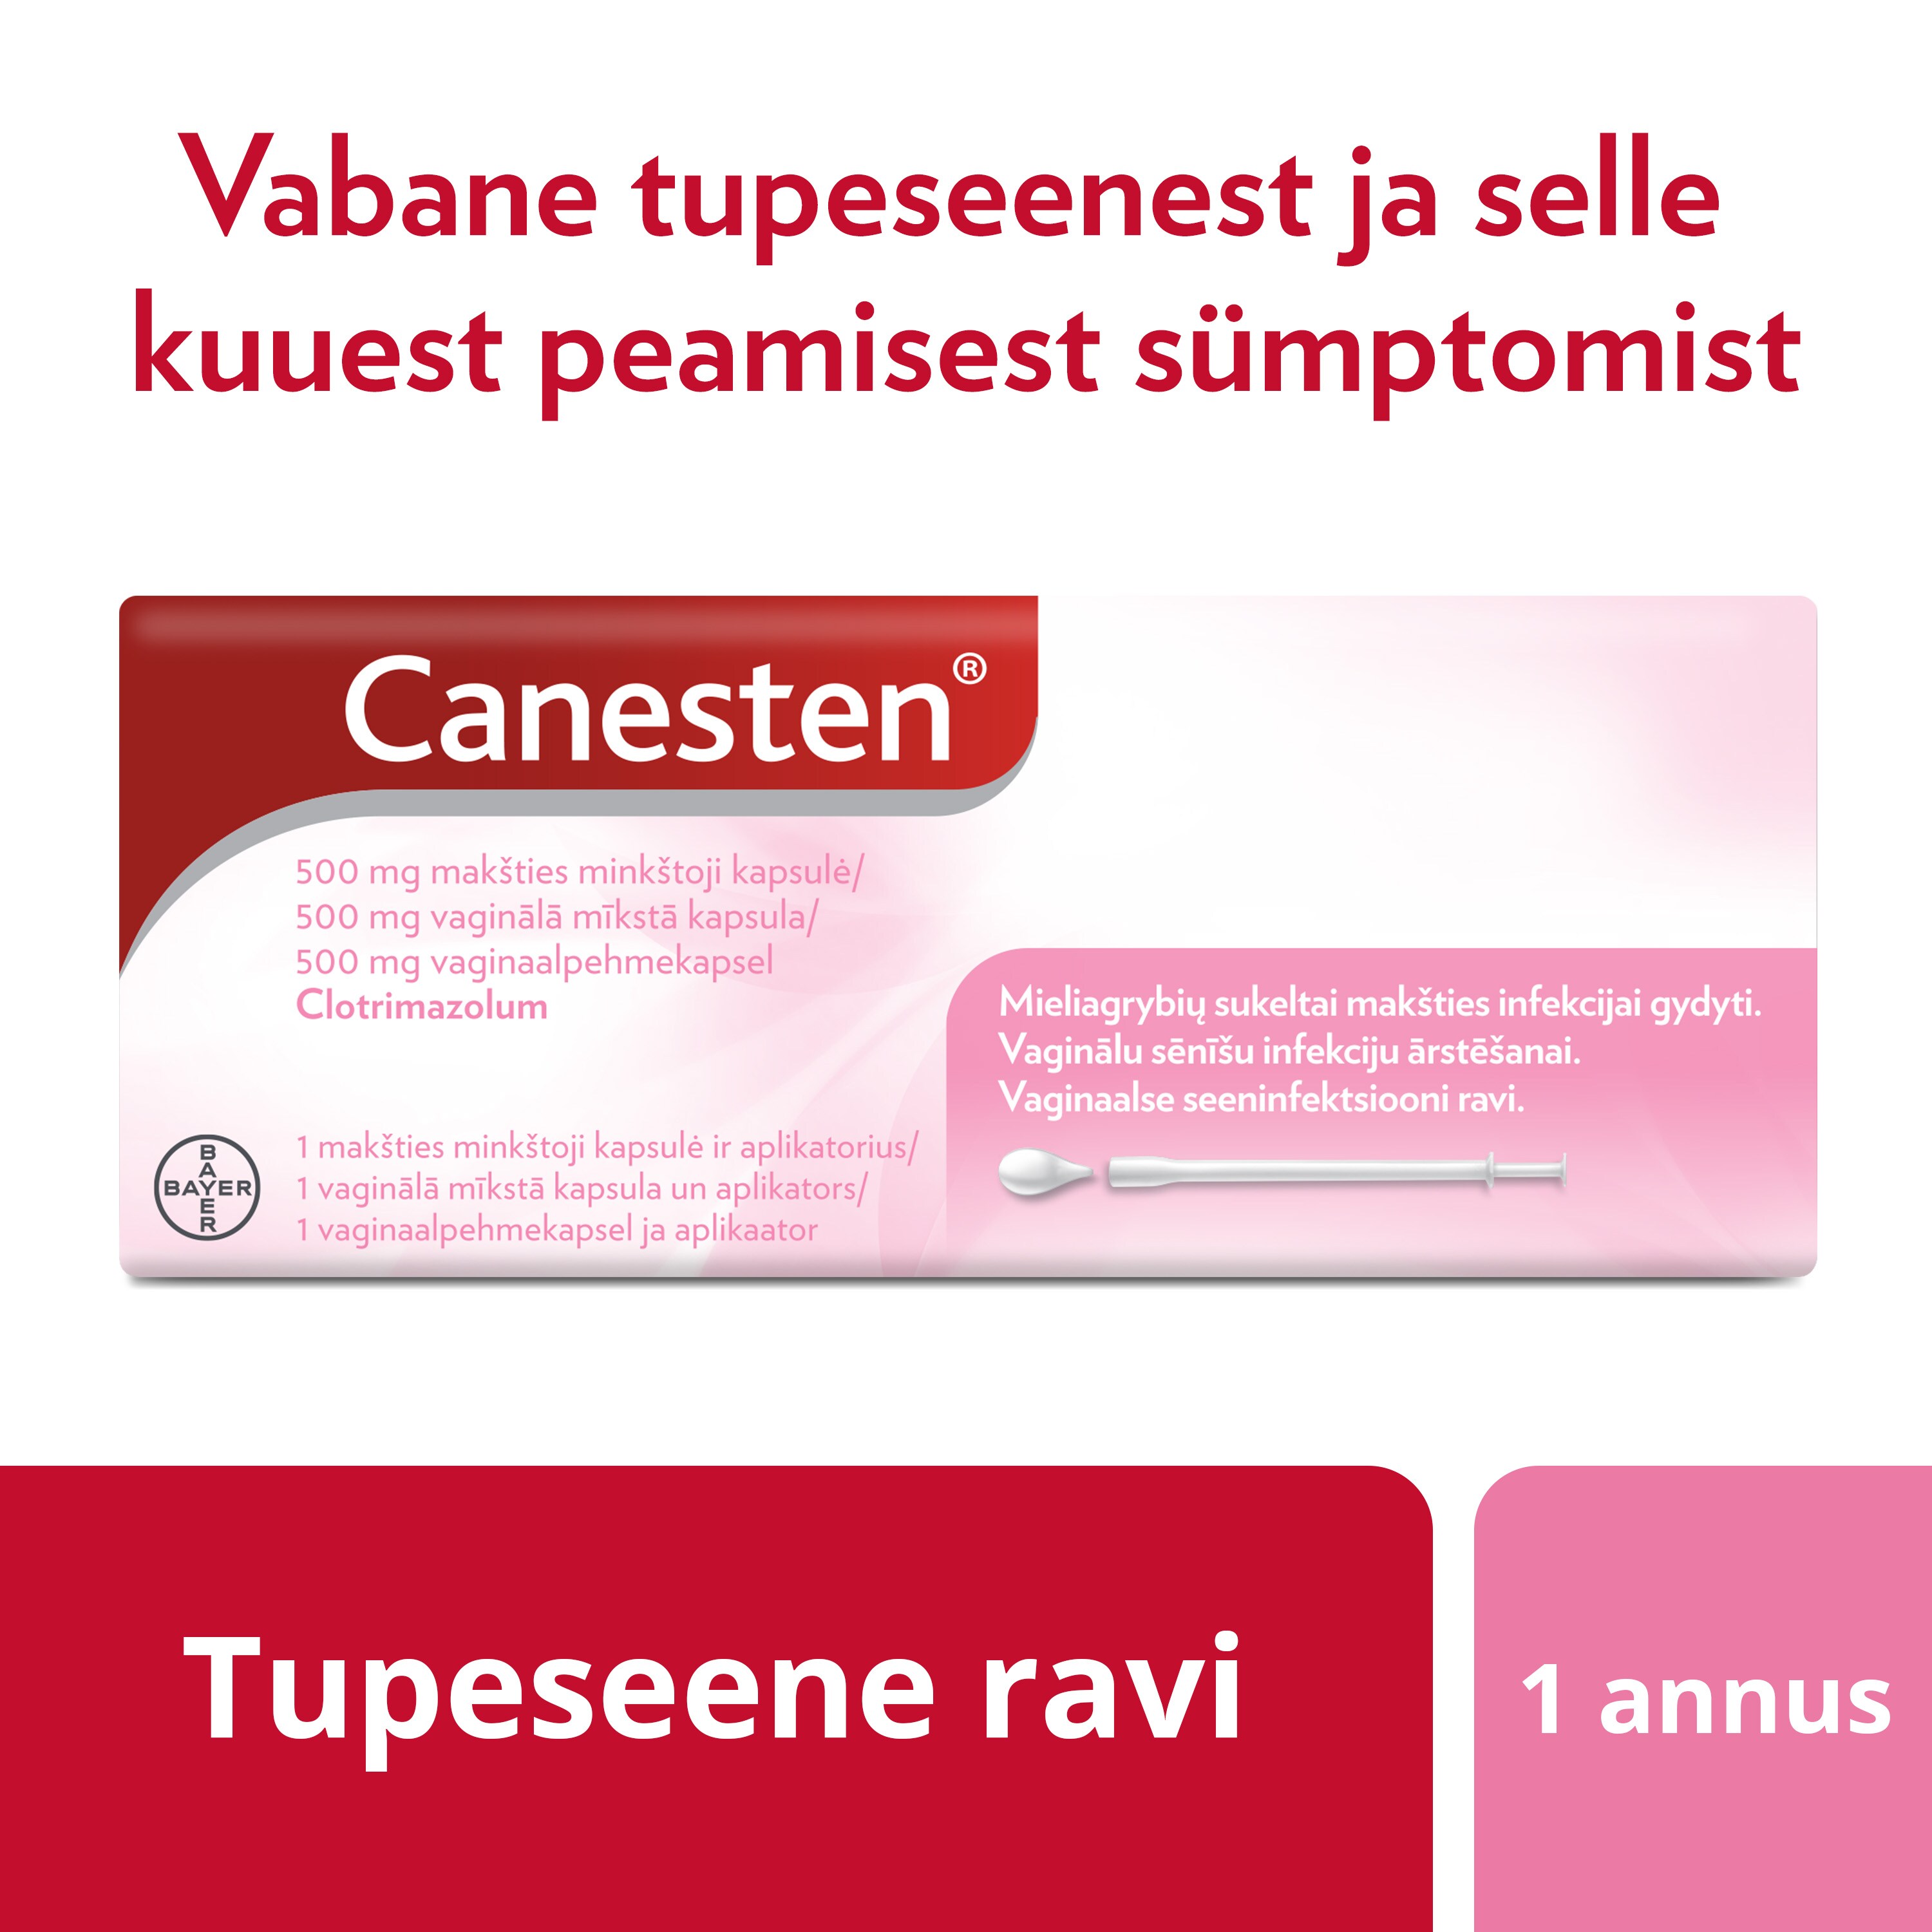 Tupeseene ravi ainult ühe Canesten® (klotrimasool) 500 mg vaginaalpehmekapsliga. Vabane tupeseenest ja selle kuuest peamisest sümptomist.